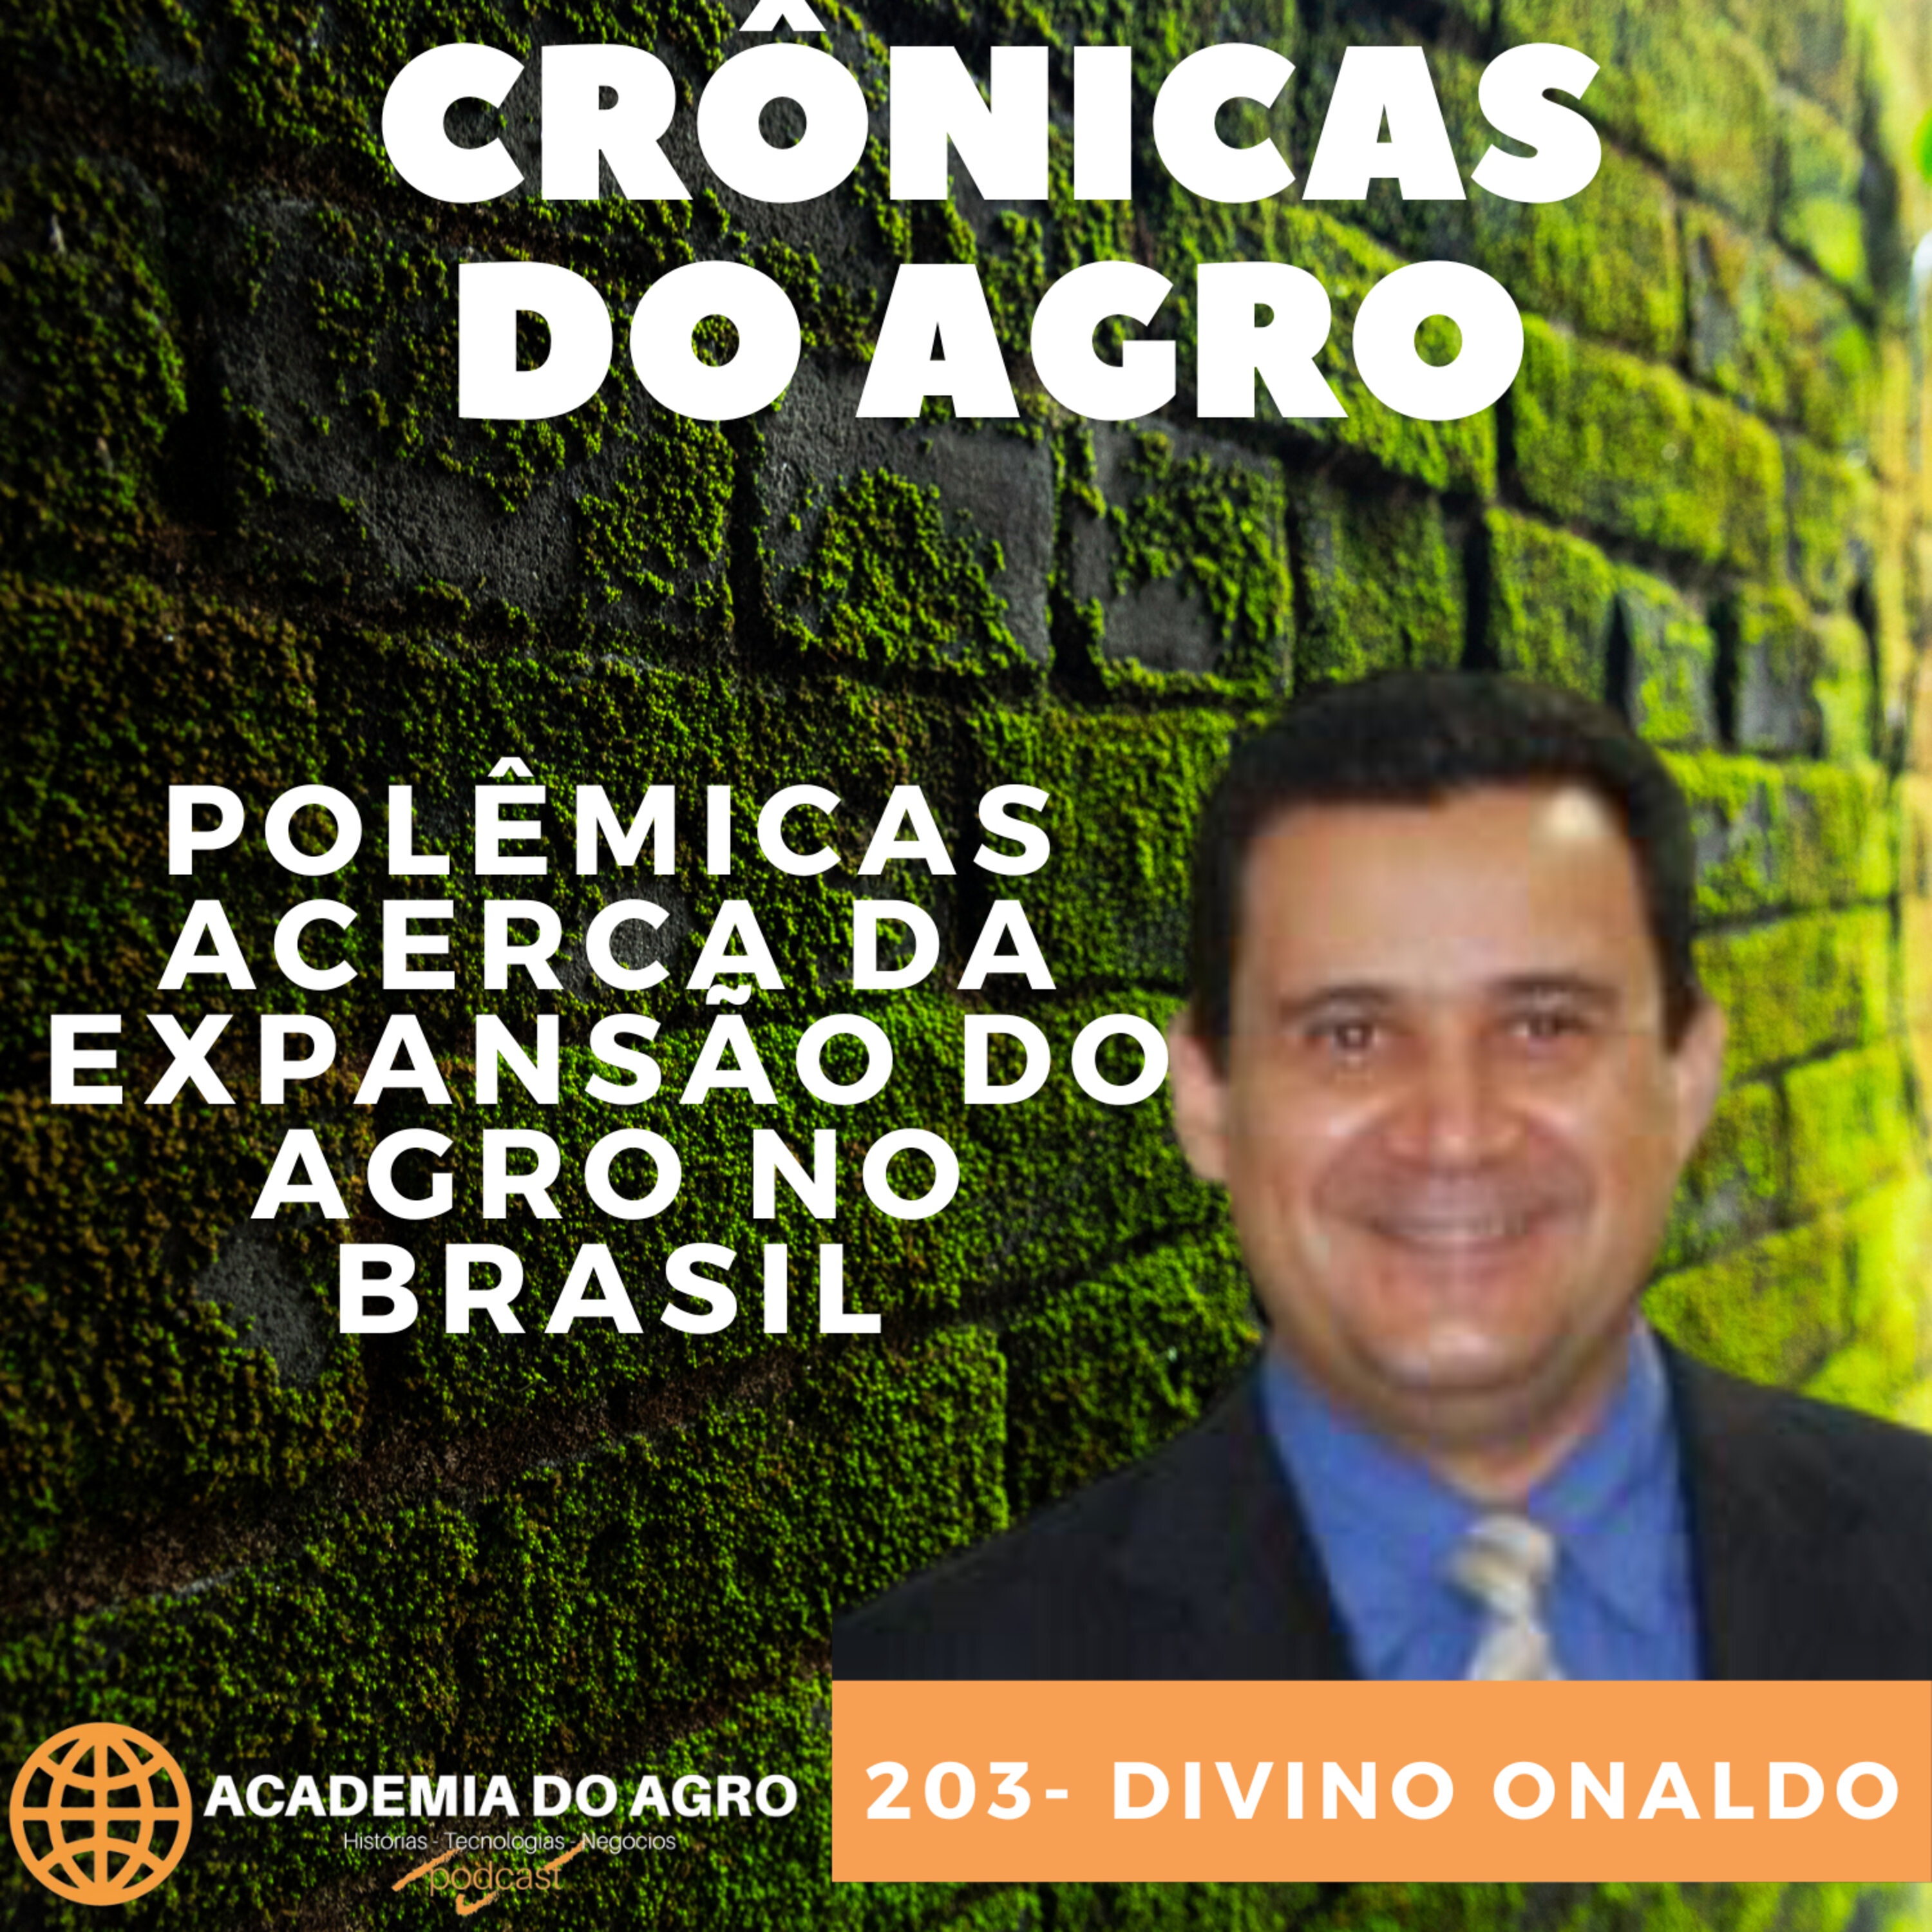 Polêmicas Acerca da Expansão do Agro no Brasil